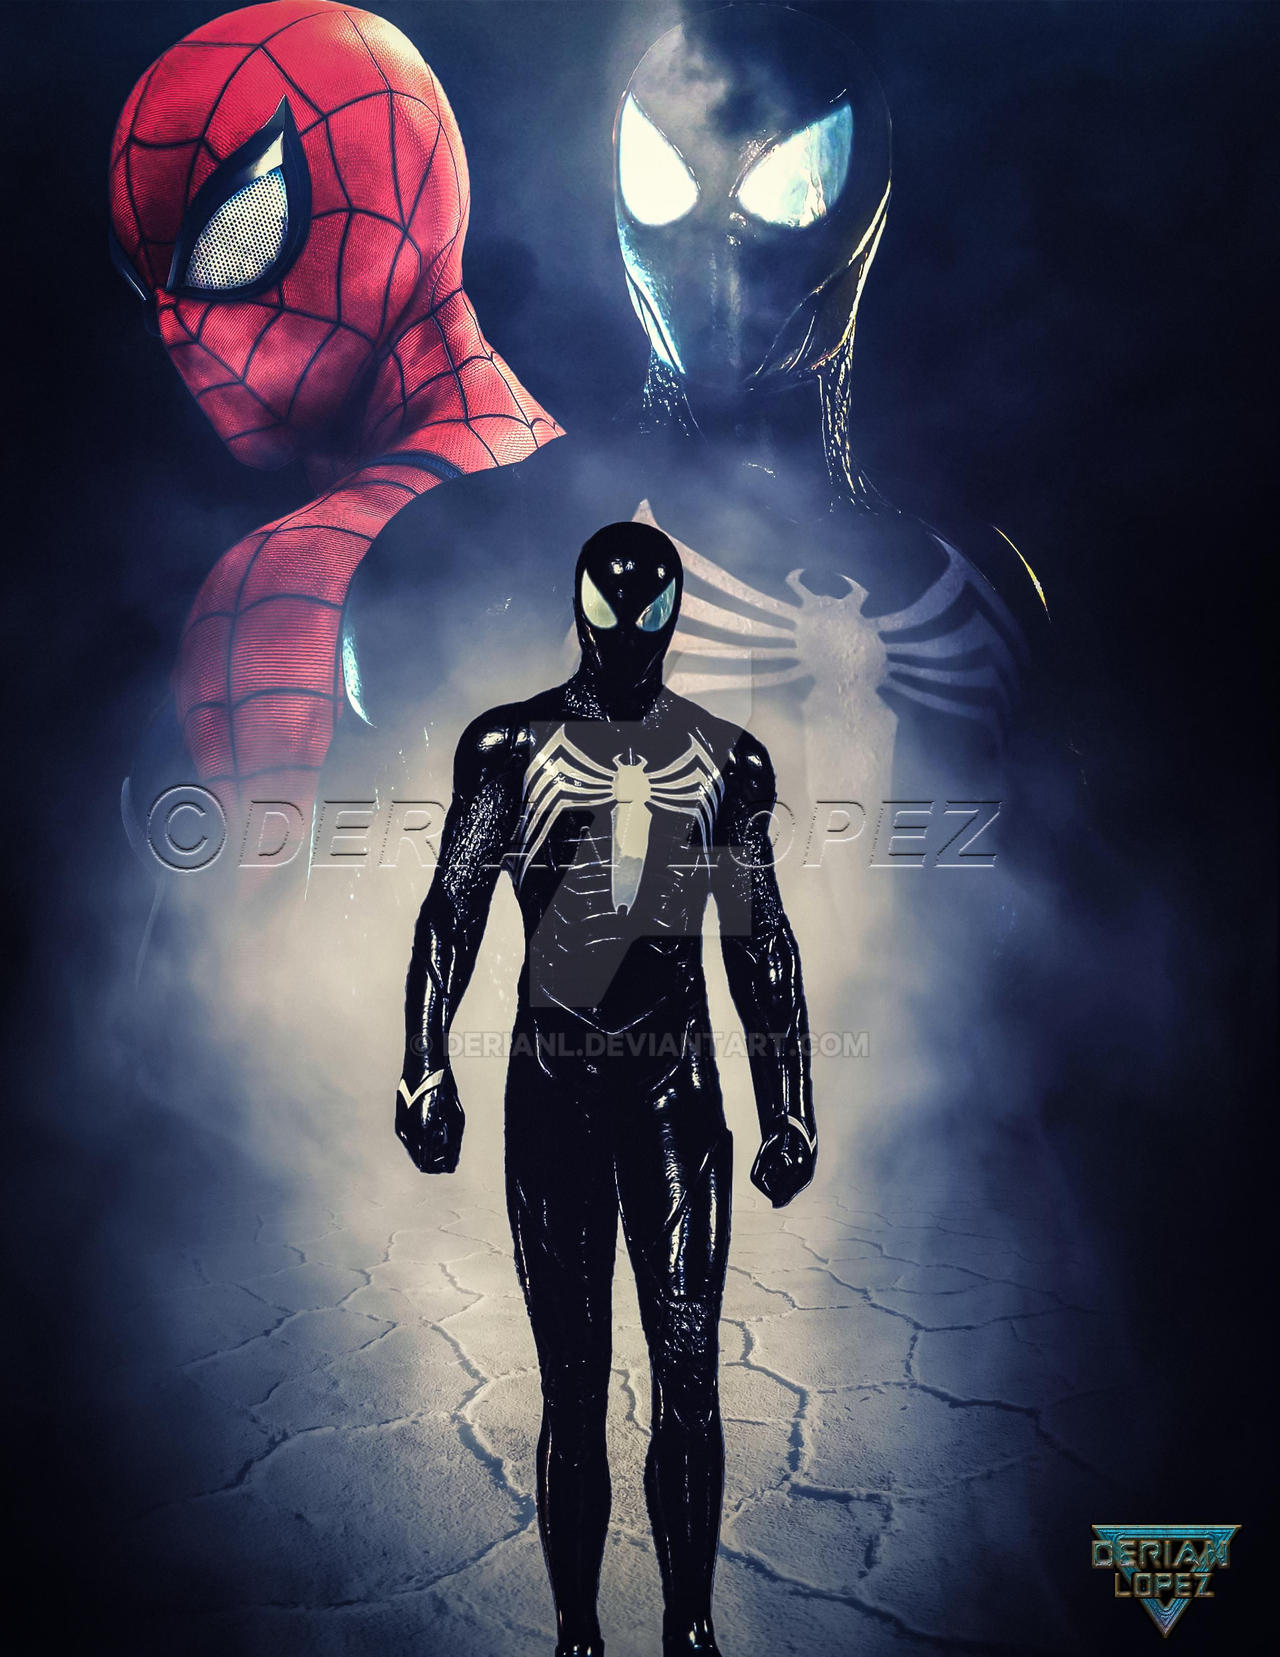 Amazing Spider-Man 3 Poster by derianl on DeviantArt